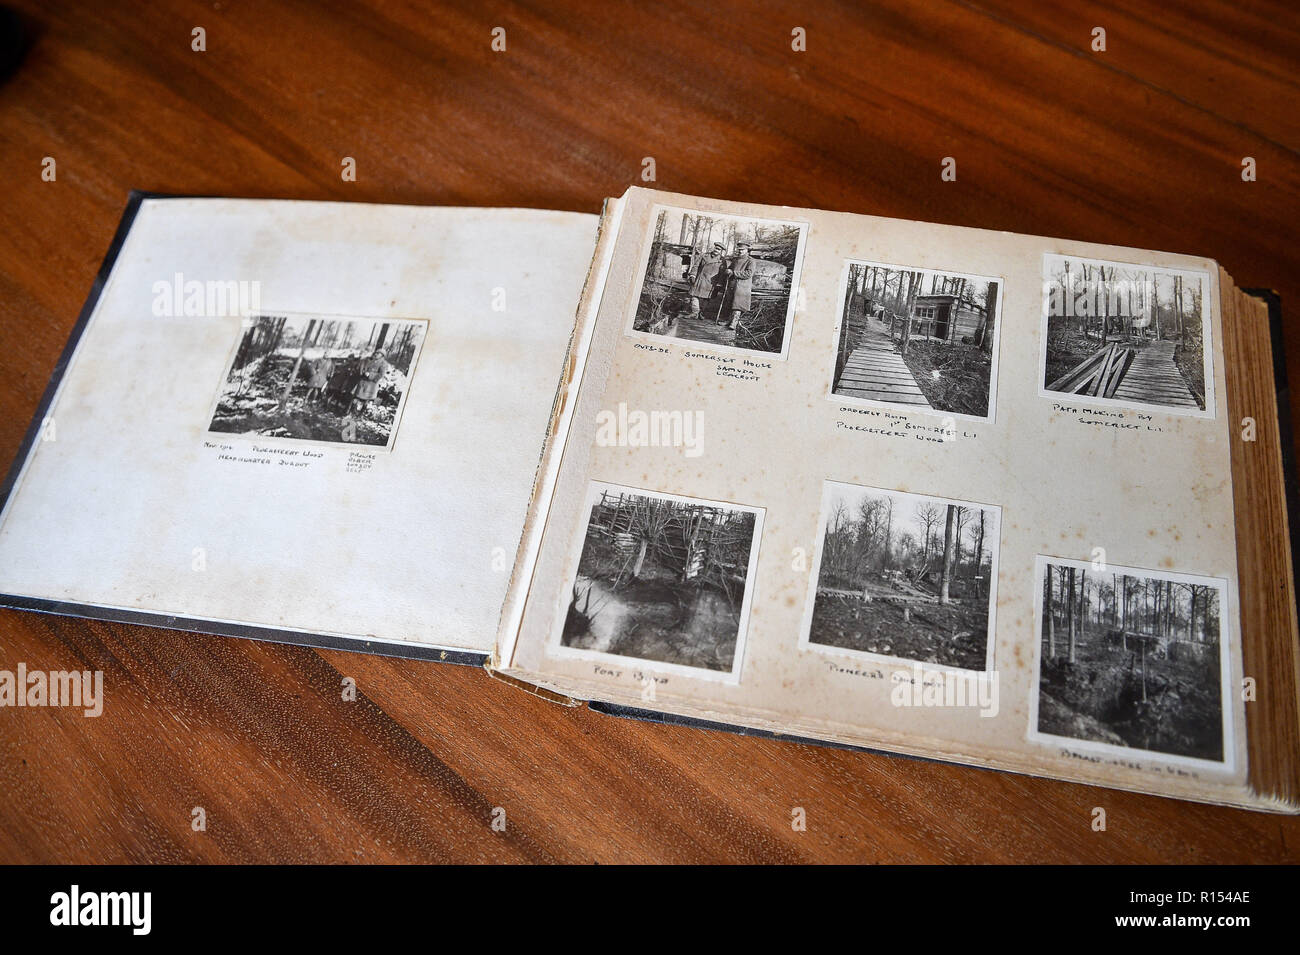 Un album fotografico contenente immagini prese dal capitano Robert Harley Egerton Bennett, del suo tempo di Ypres, Belgio, durante la Prima Guerra Mondiale, che era stato trovato nella sua casa per la sua famiglia. Foto Stock